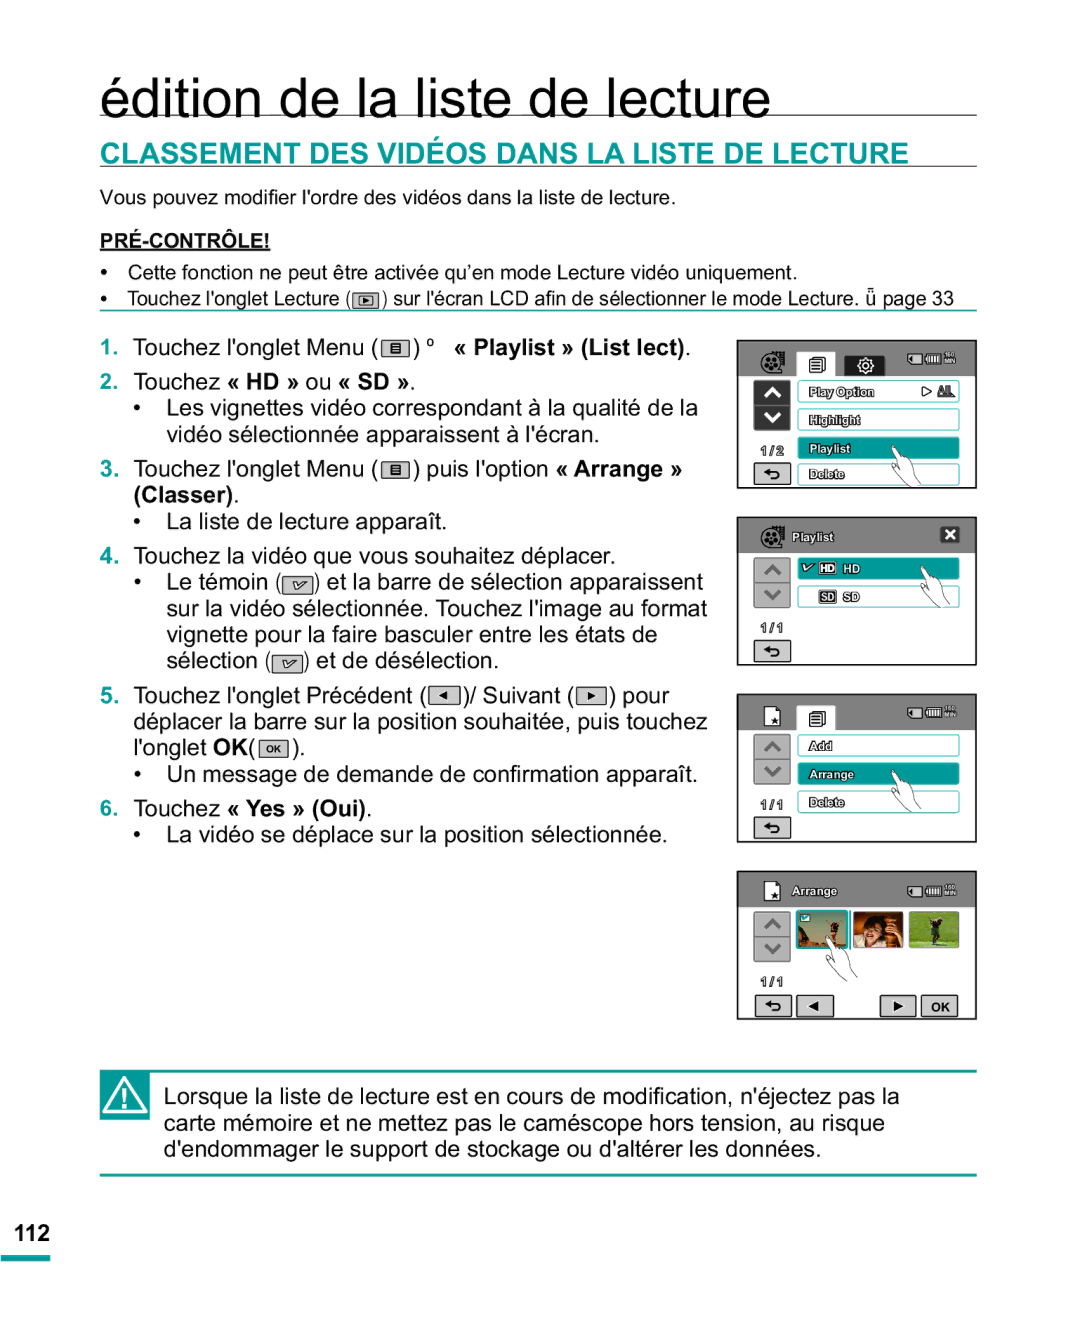 Samsung HMX-R10BP/EDC, HMX-R10SP/EDC manual Classement DES Vidéos Dans LA Liste DE Lecture, 112 